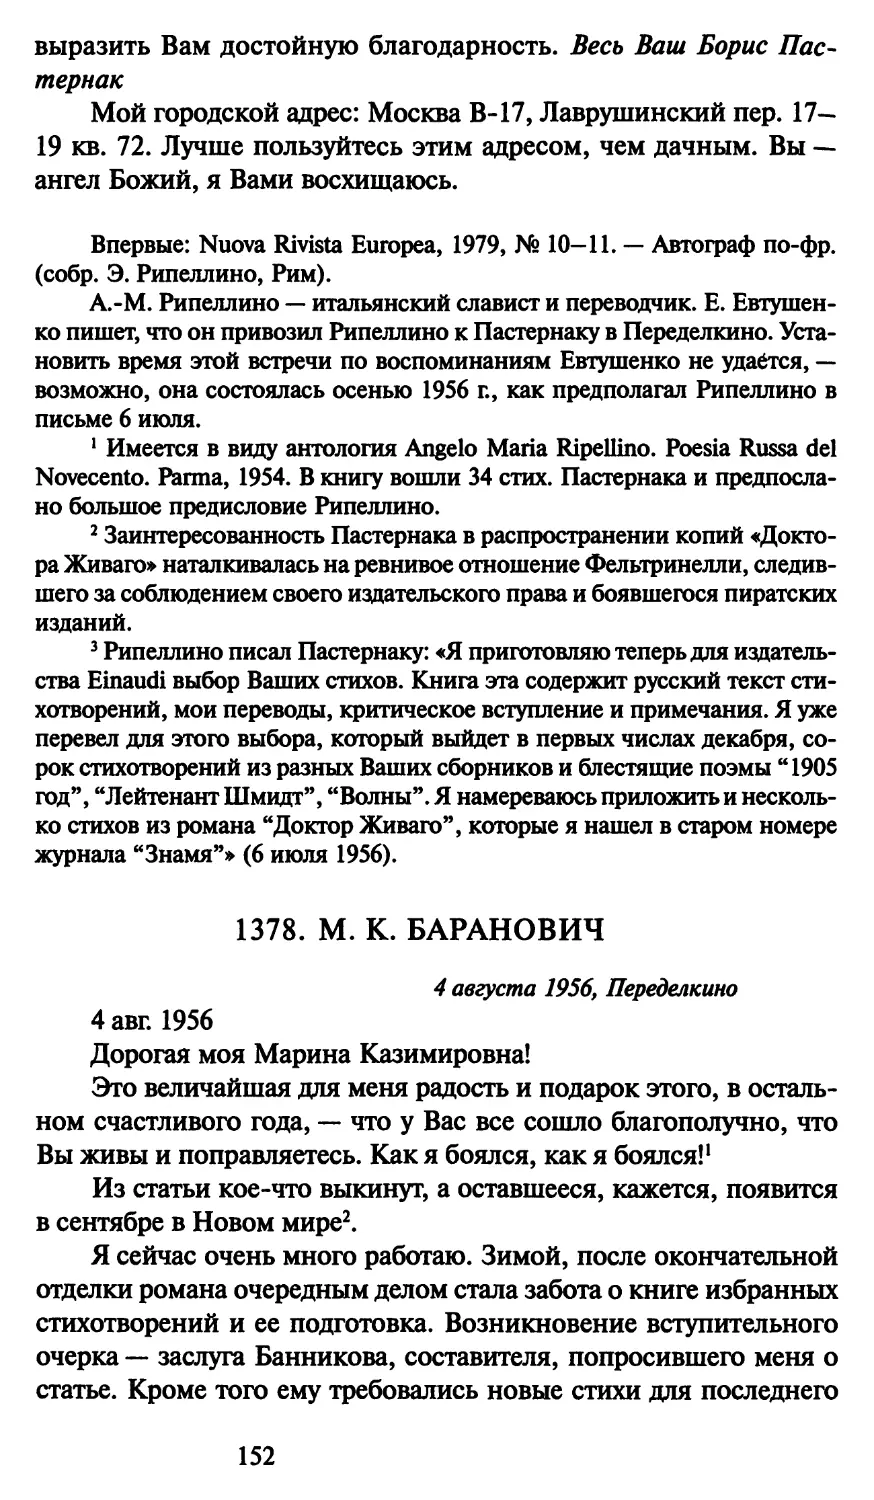 1378. М. К. Баранович 4 августа 1956